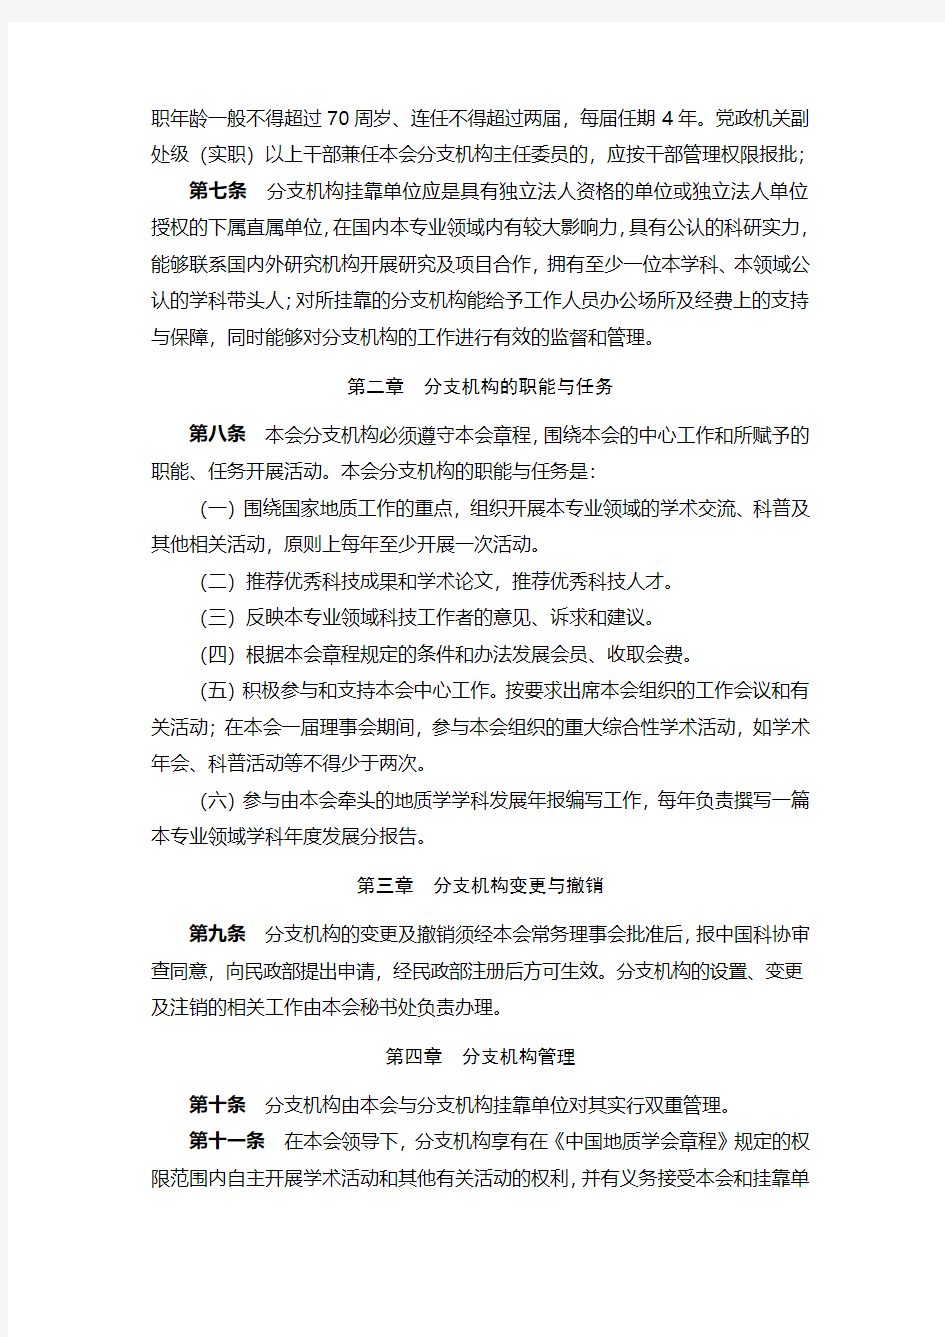 中国地质学会分支机构管理办法